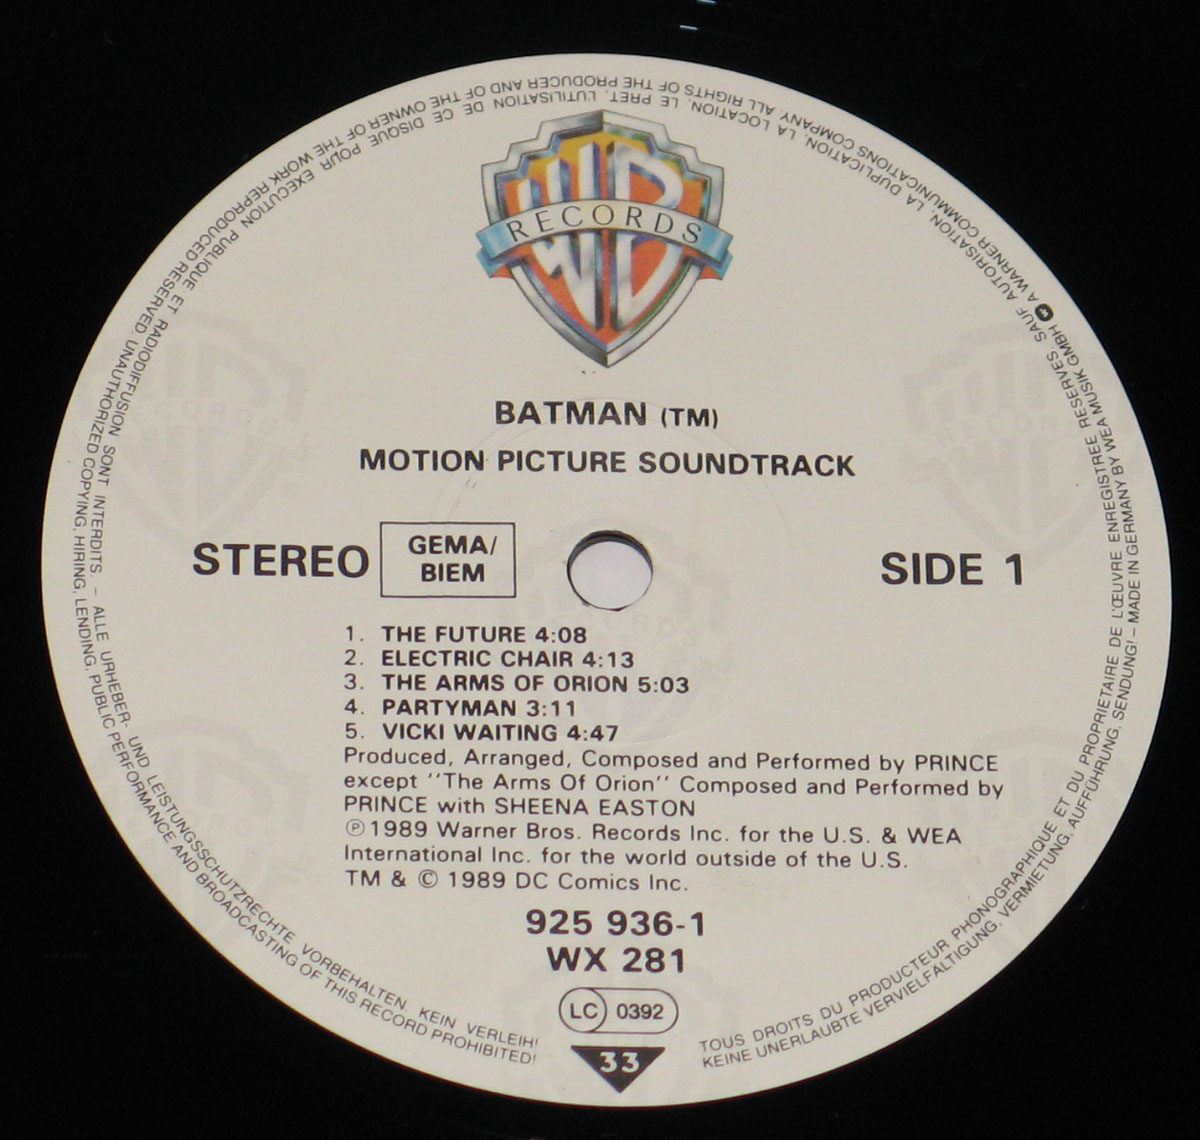 Revision Populær Tage af PRINCE Batman Rock OST Soundtrack 12" LP Vinyl Album Cover Gallery &  Information #vinylrecords